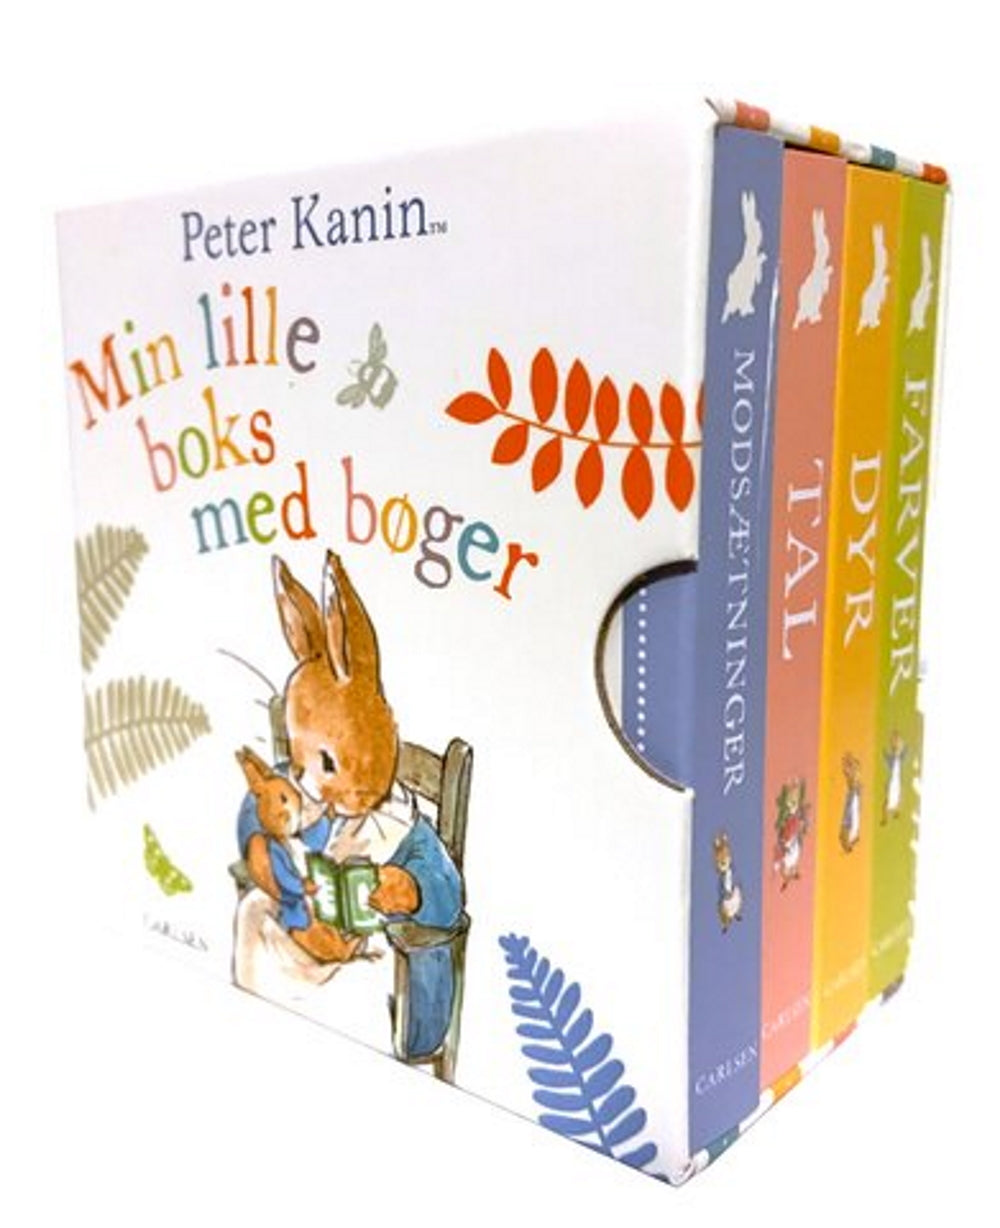 Bog, Peter Kanin - Min lille boks med bøger